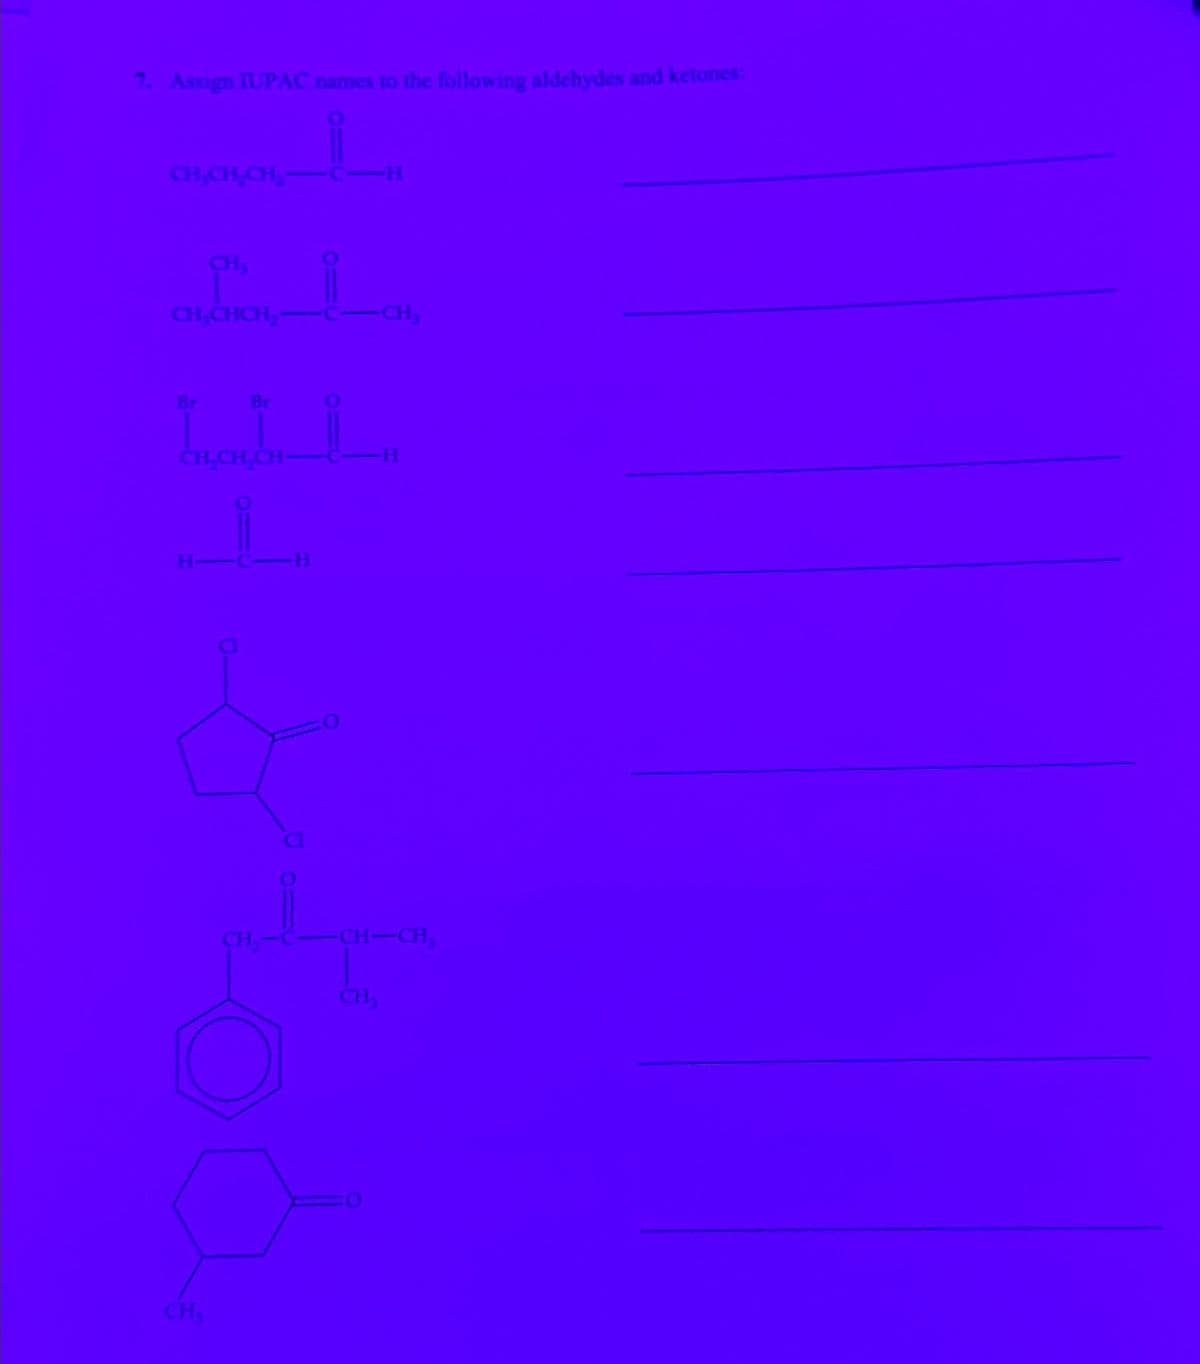 7. Assign IUPAC names to the following aldehydes and ketones:
CH,CH,CH,
CiH
CH
CH,CHCH2
Br
Br
CH,CH,CH-
H
H
CH
CH₂
H
CH-CH
CH₁₂